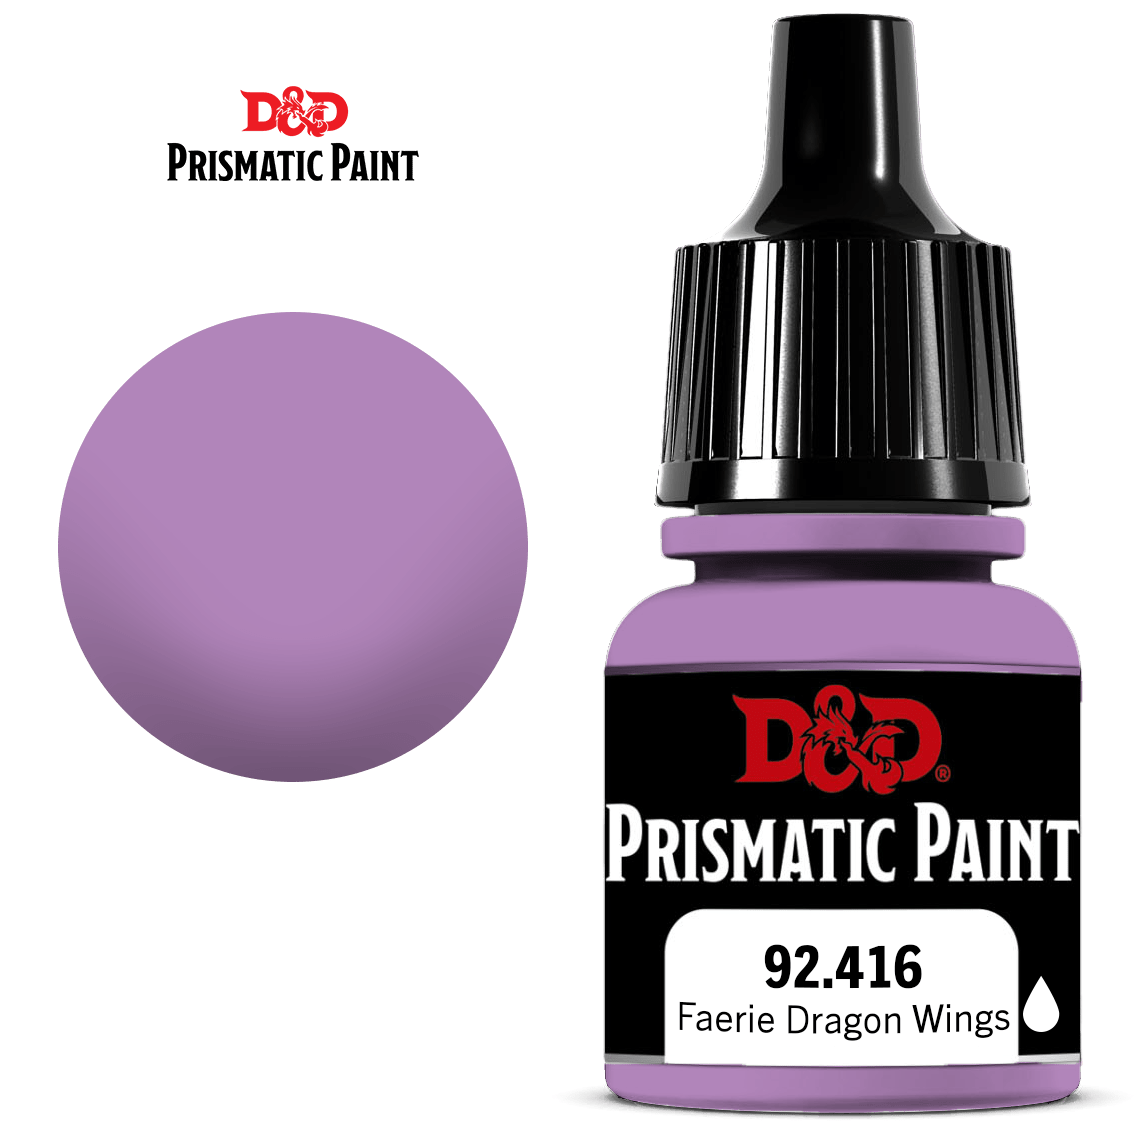 D&D Prismatic Paint: Faerie Dragon Wings